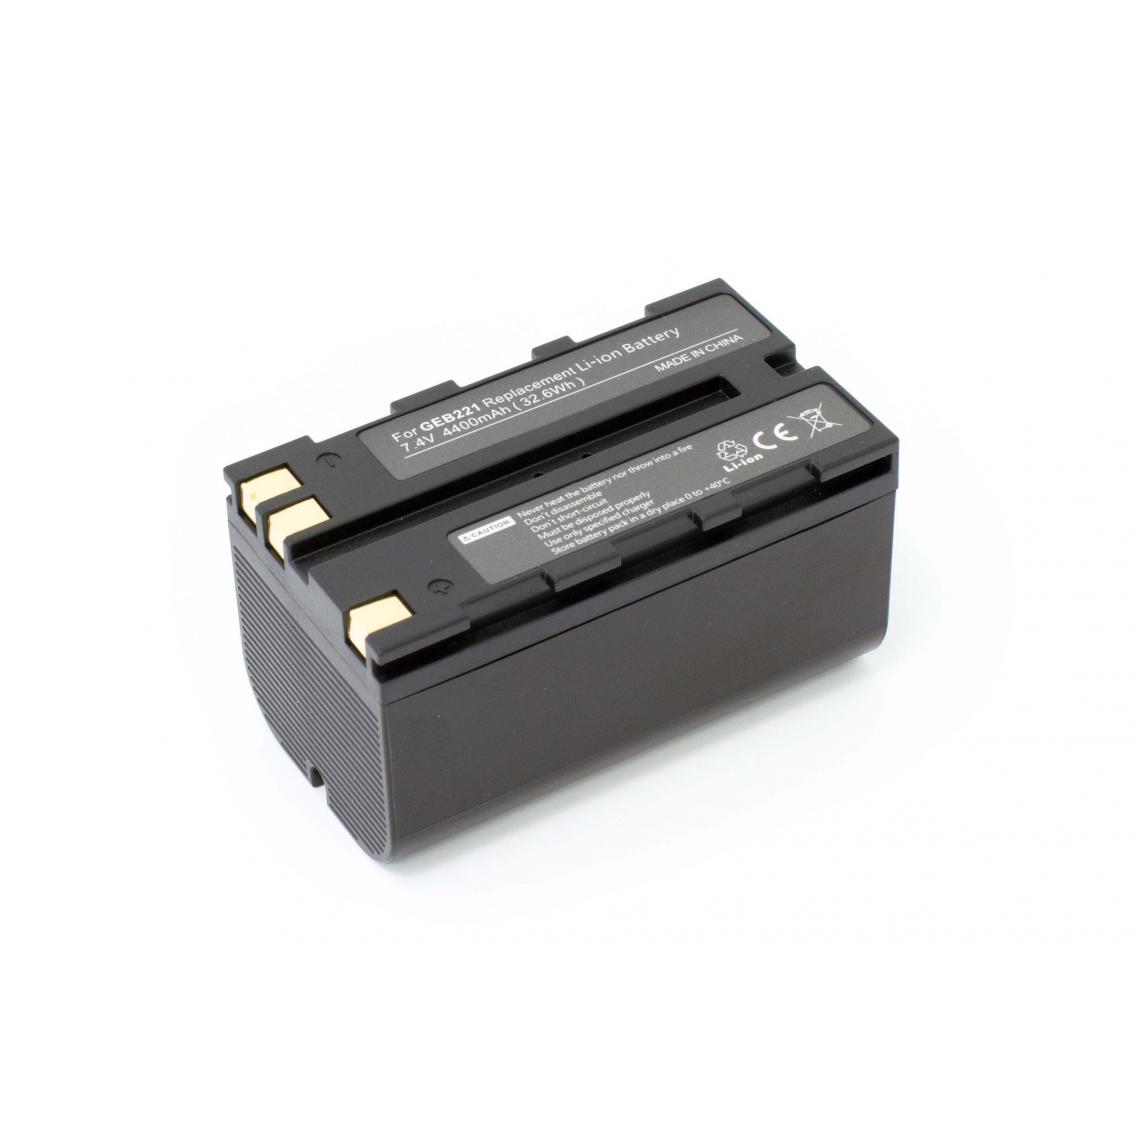 Vhbw - vhbw Batterie remplacement pour Leica GEB212, GEB221, GEB90 pour dispositif de mesure laser, outil de mesure (4400mAh, 7,4V, Li-ion) - Piles rechargeables